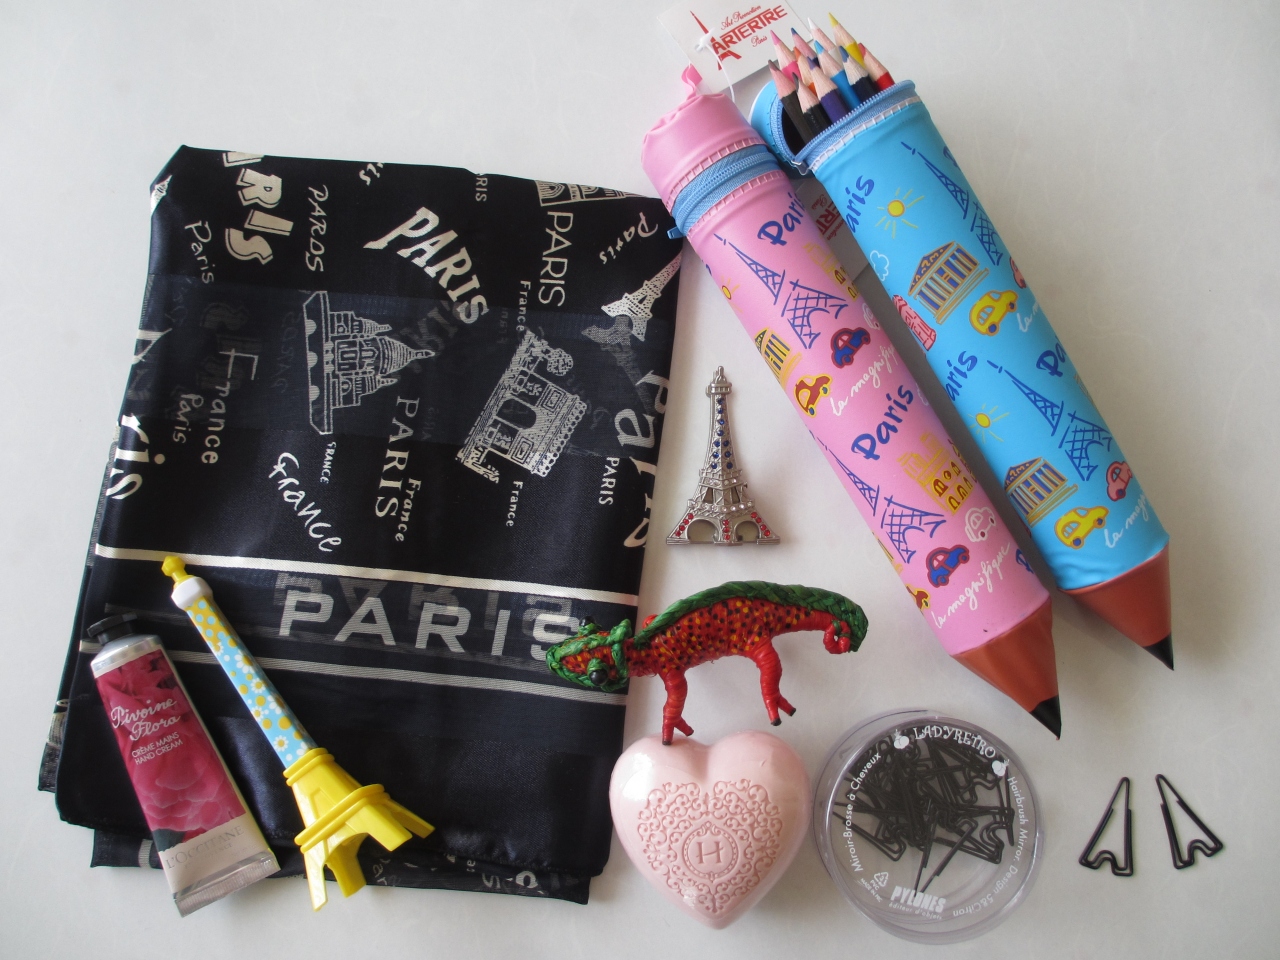 パリから行く小さな旅 お土産編 パリ フランス の旅行記 ブログ By Miemieさん フォートラベル